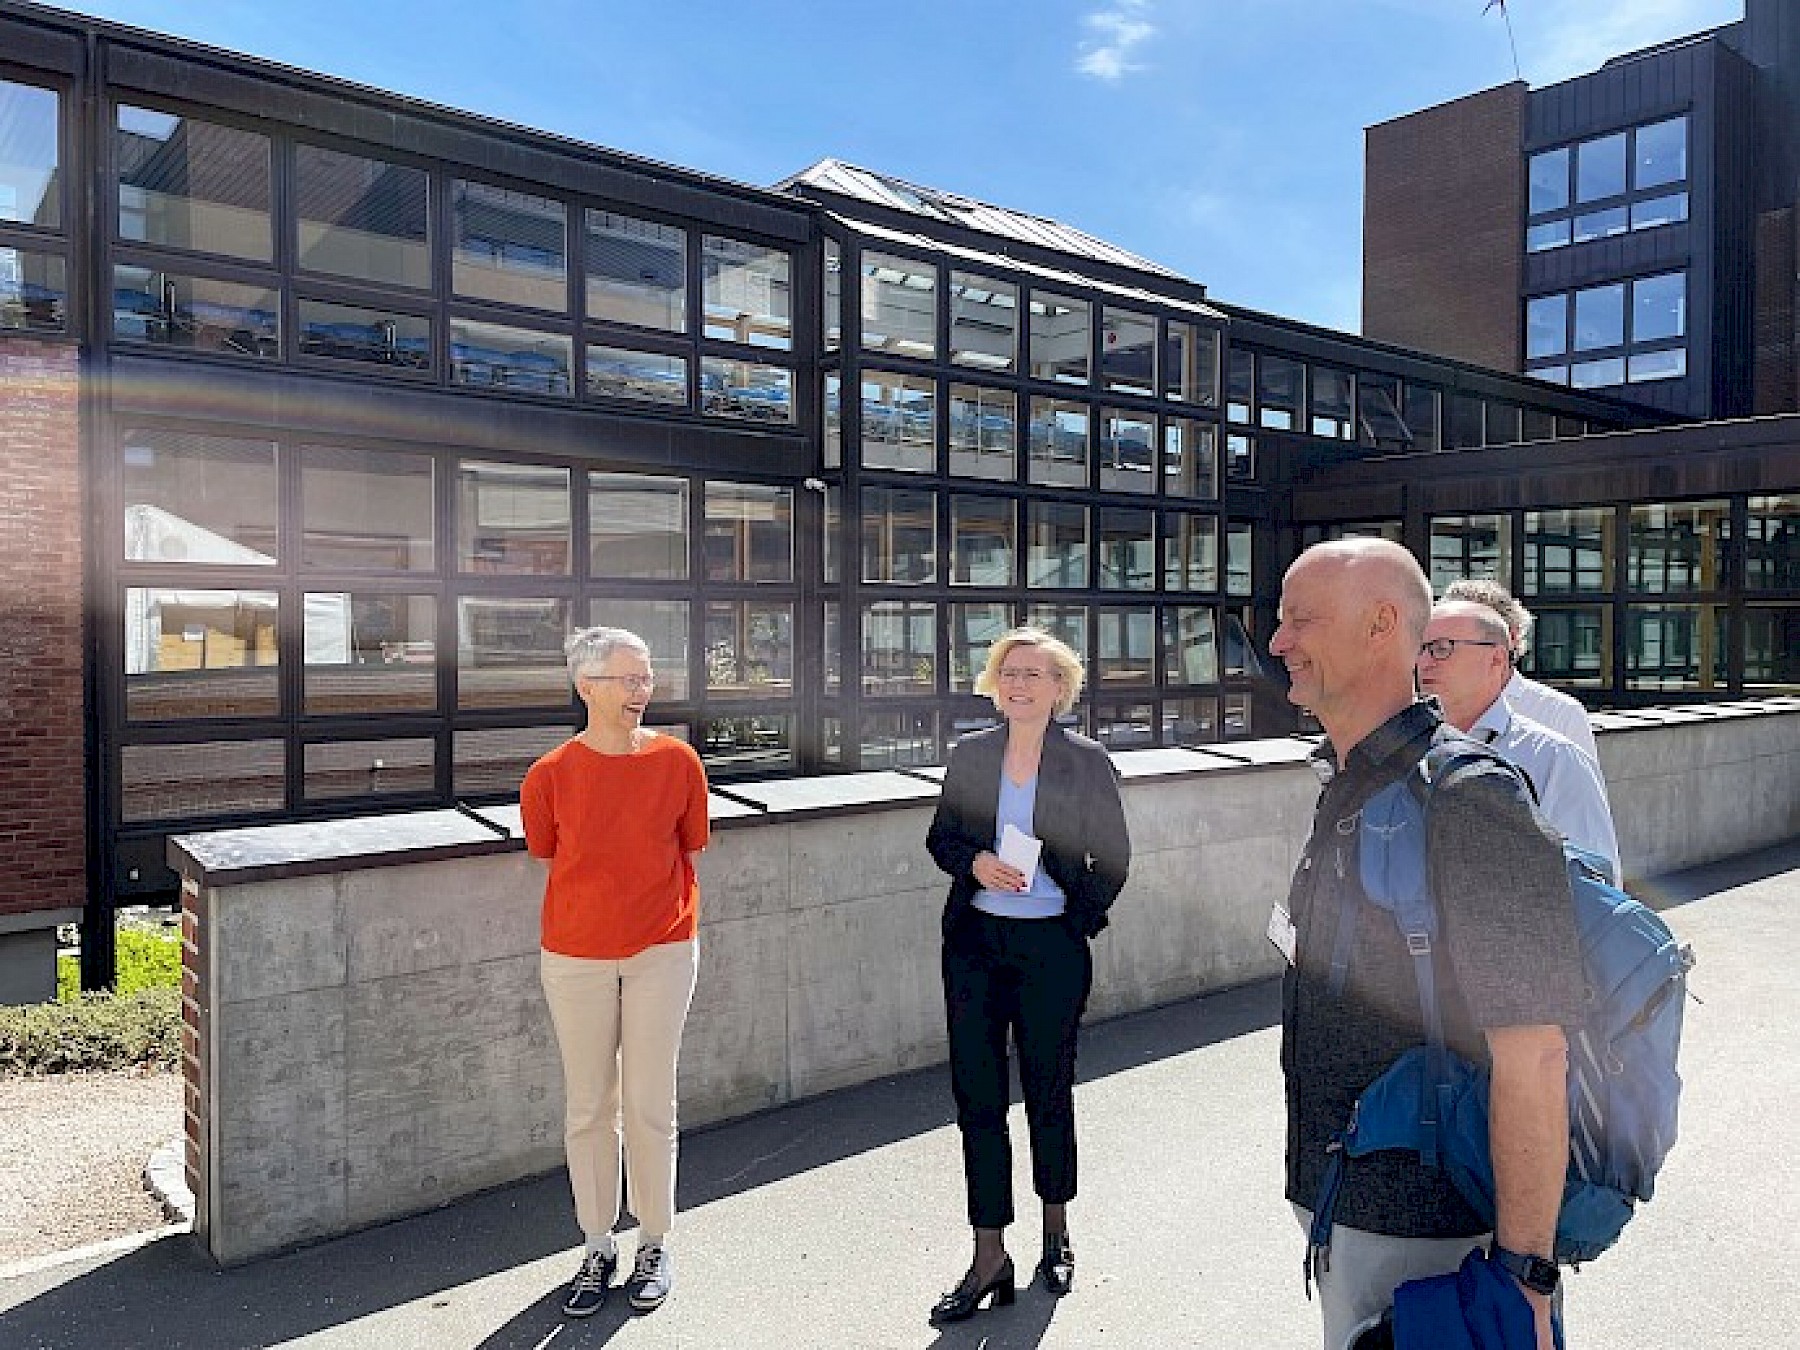 Torkil Clementsen, viseadministrerende direktør og fagdirektør på sykehuset presenterte sykehusets planer for å utvide G-fløyen utvide lokalsykehustilbudet til befolkningen og gjøre mer for flere i Oslo